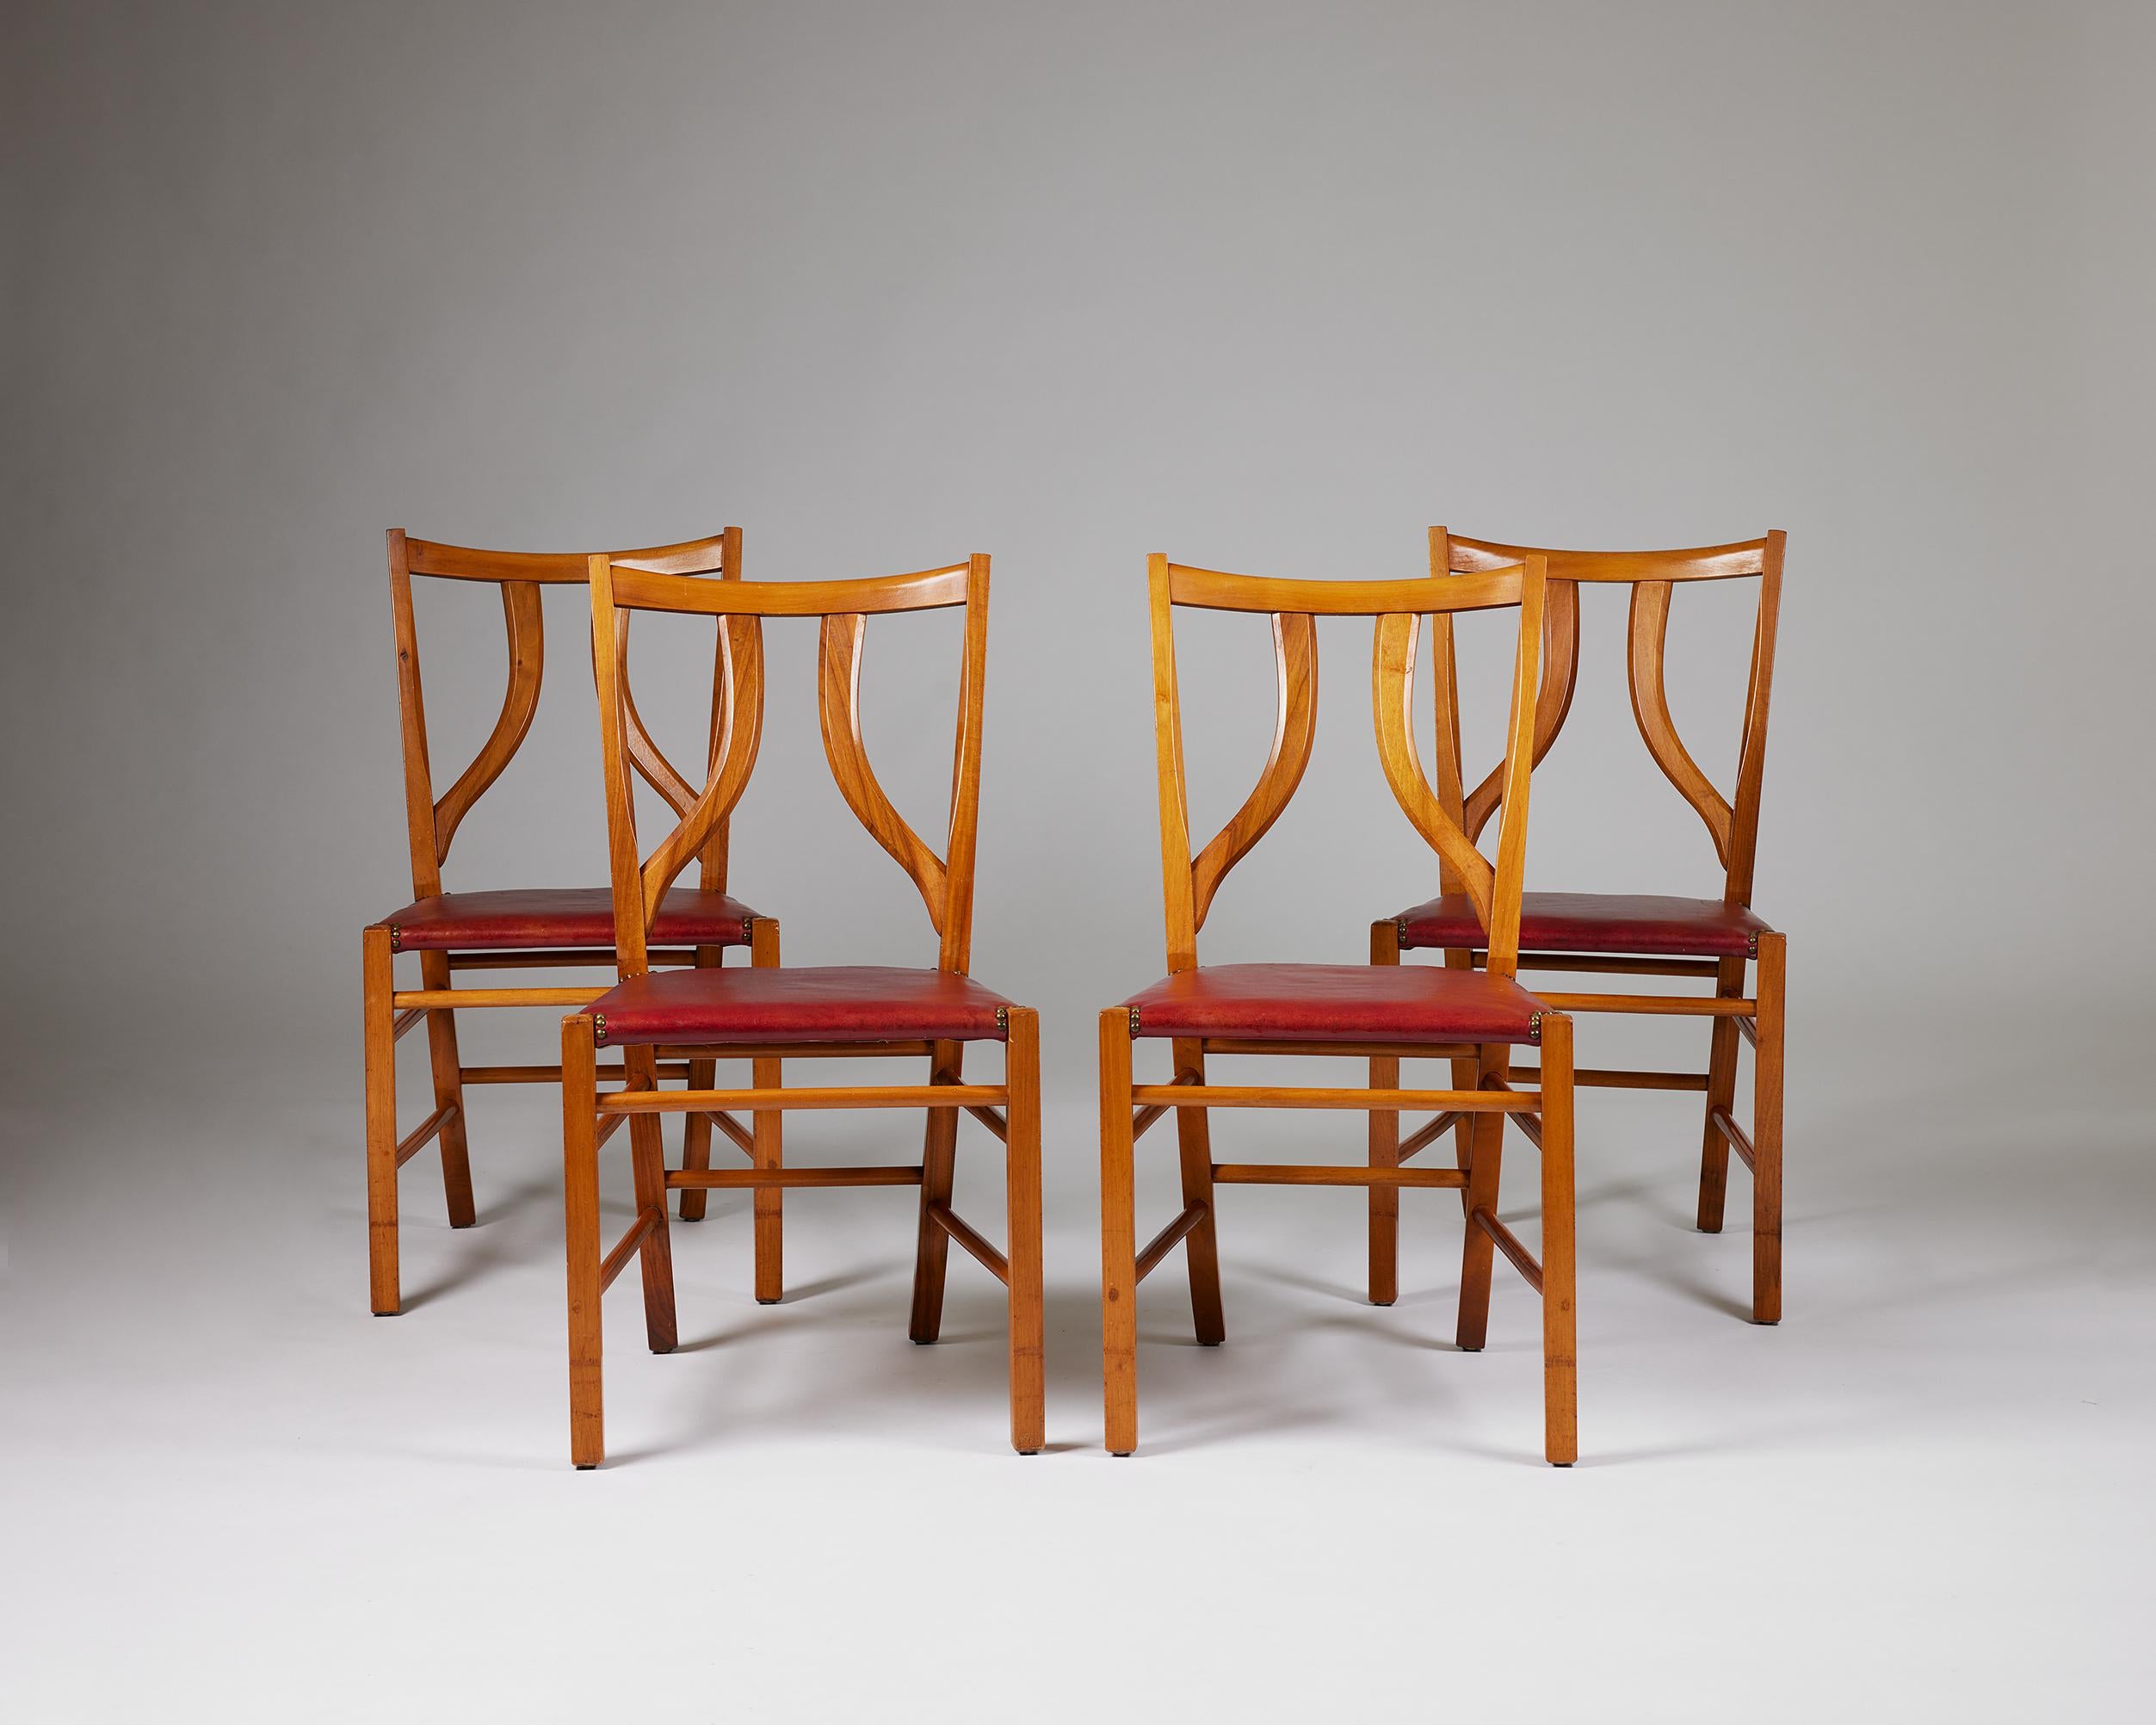 Ensemble de quatre chaises de salle à manger modèle 2027 conçu par Josef Frank pour Svenskt Tenn.
Suède, années 1950.

Acajou et cuir.

En collaboration avec Estrid Franks et son entreprise d'ameublement, Svenskt Tenn, Josef Frank a développé son